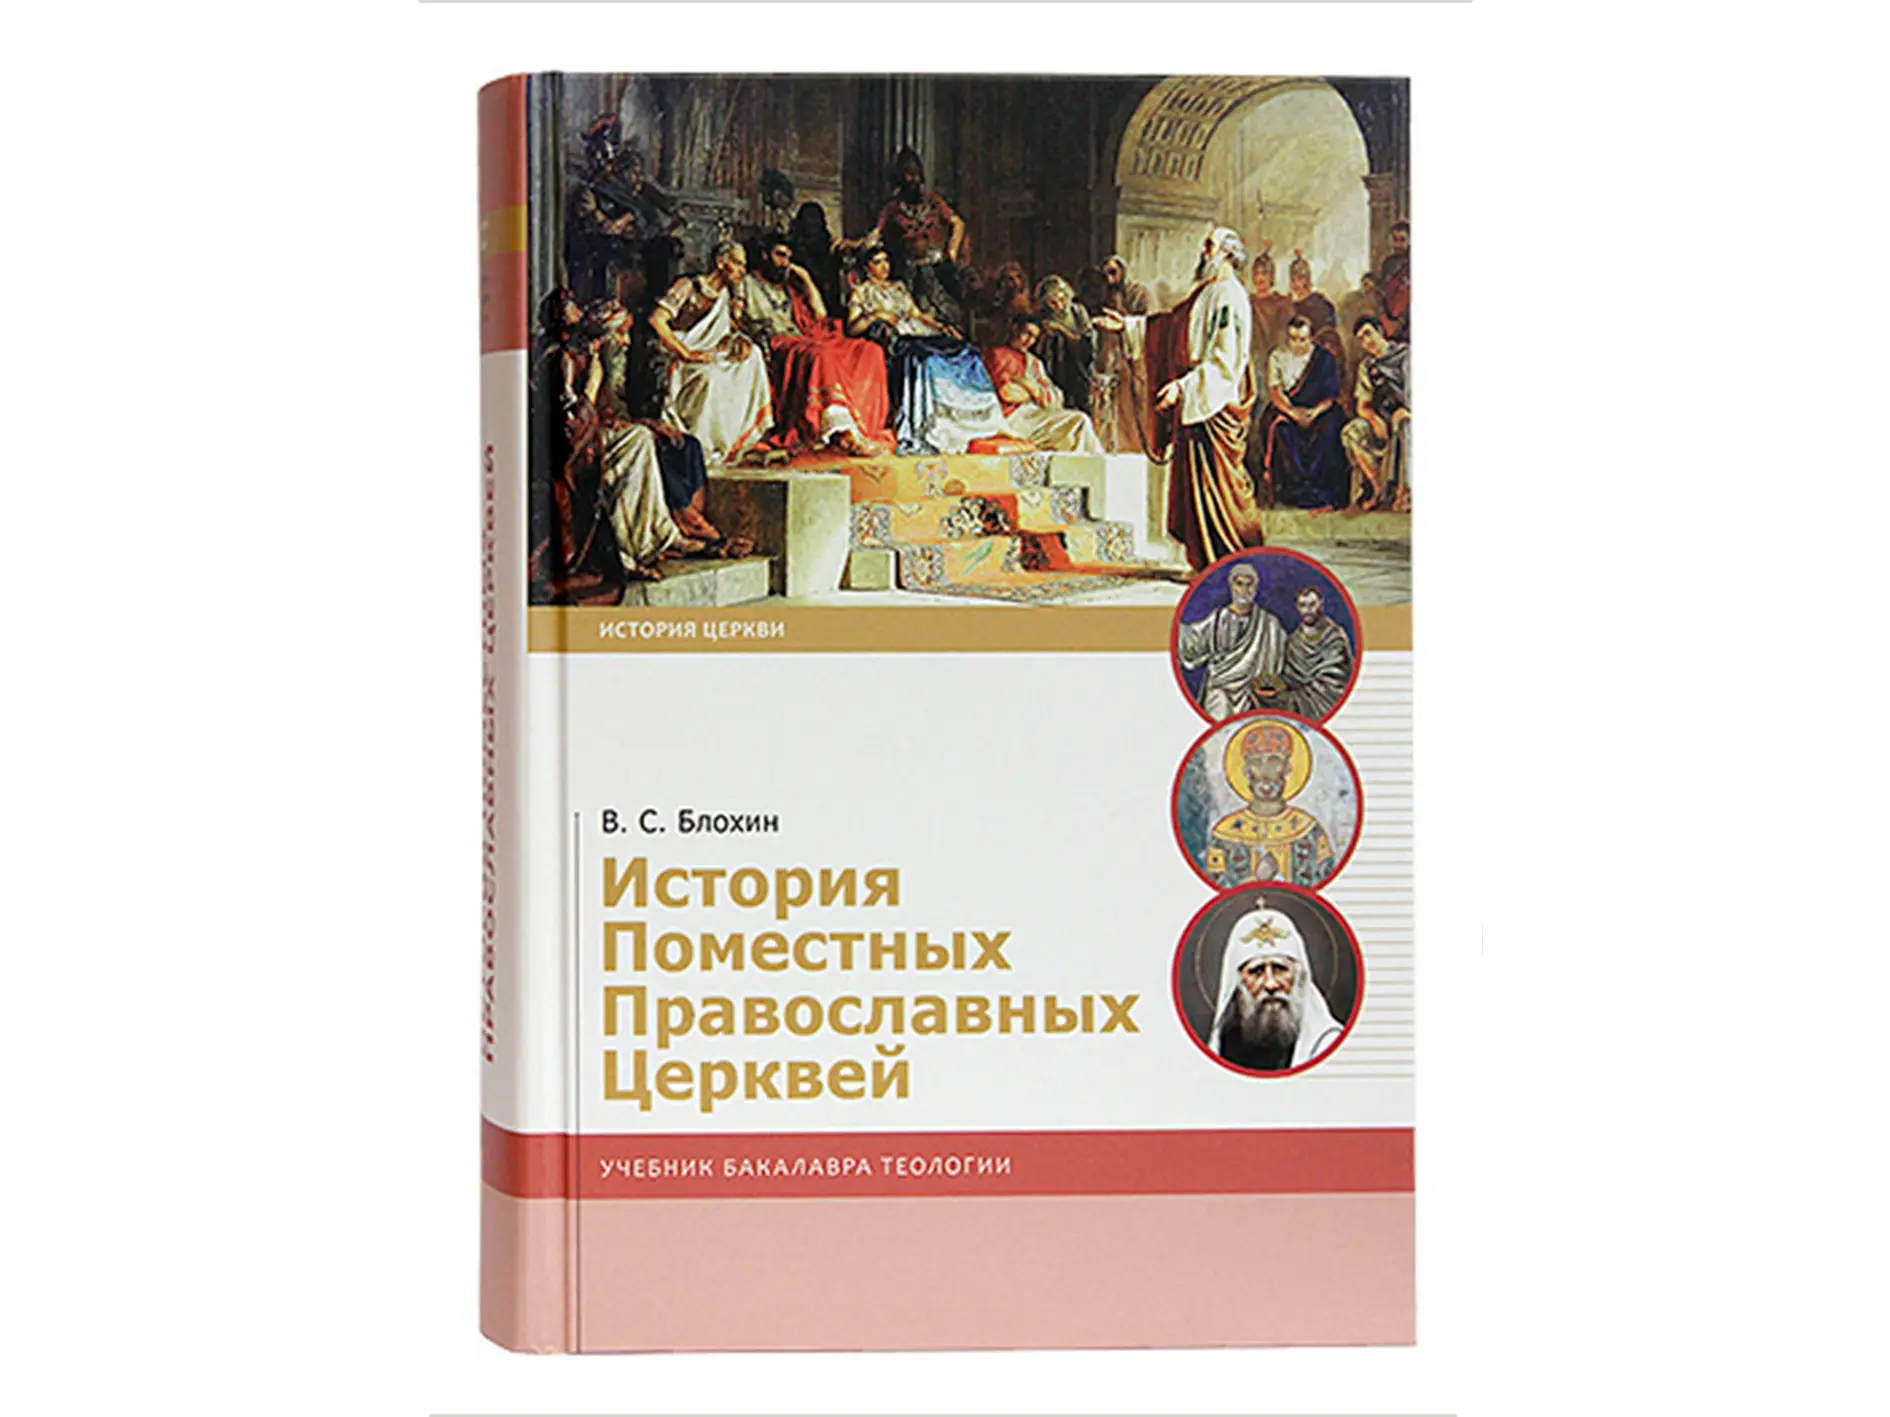 В Издательстве Московской Патриархии вышел учебник «История Поместных Православных Церквей»